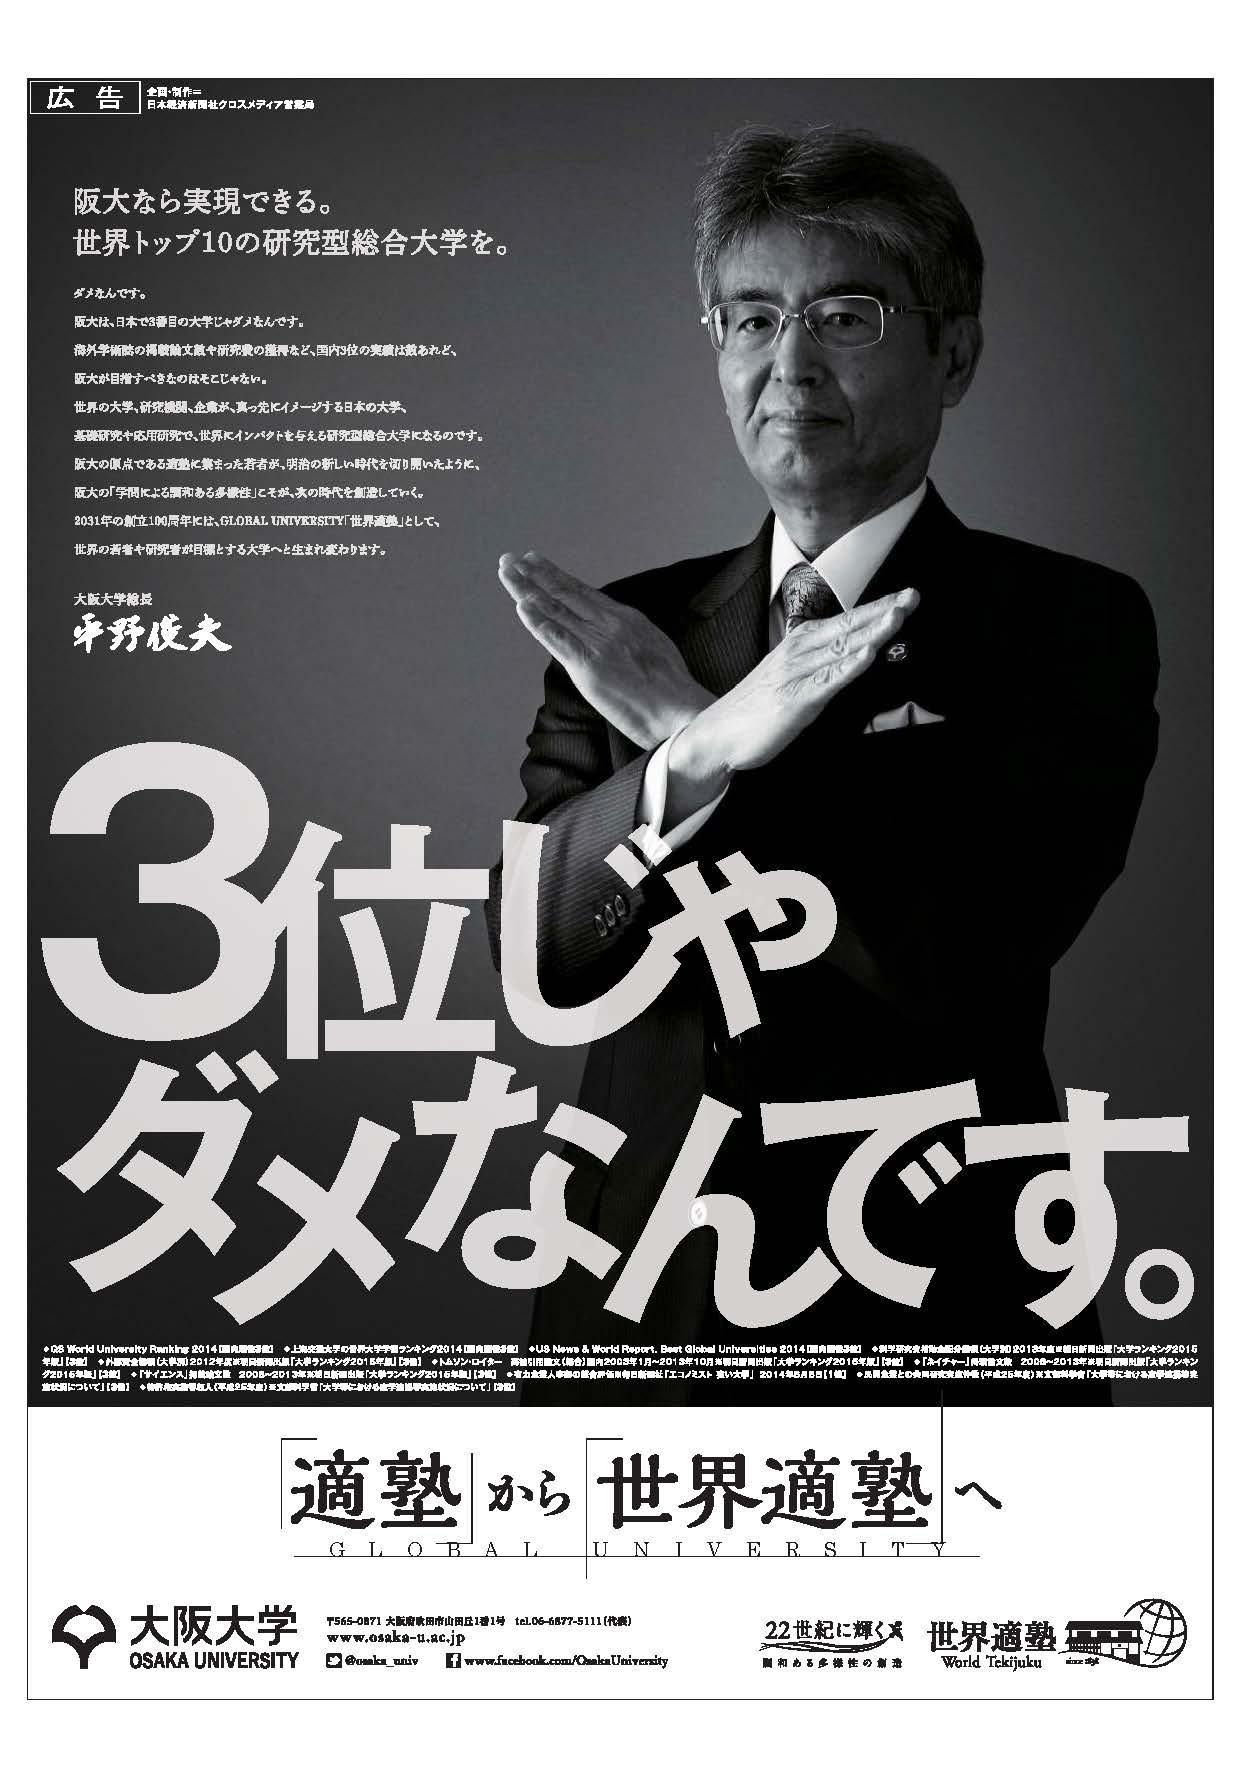 大阪大学の広告を日本経済新聞に掲載しました